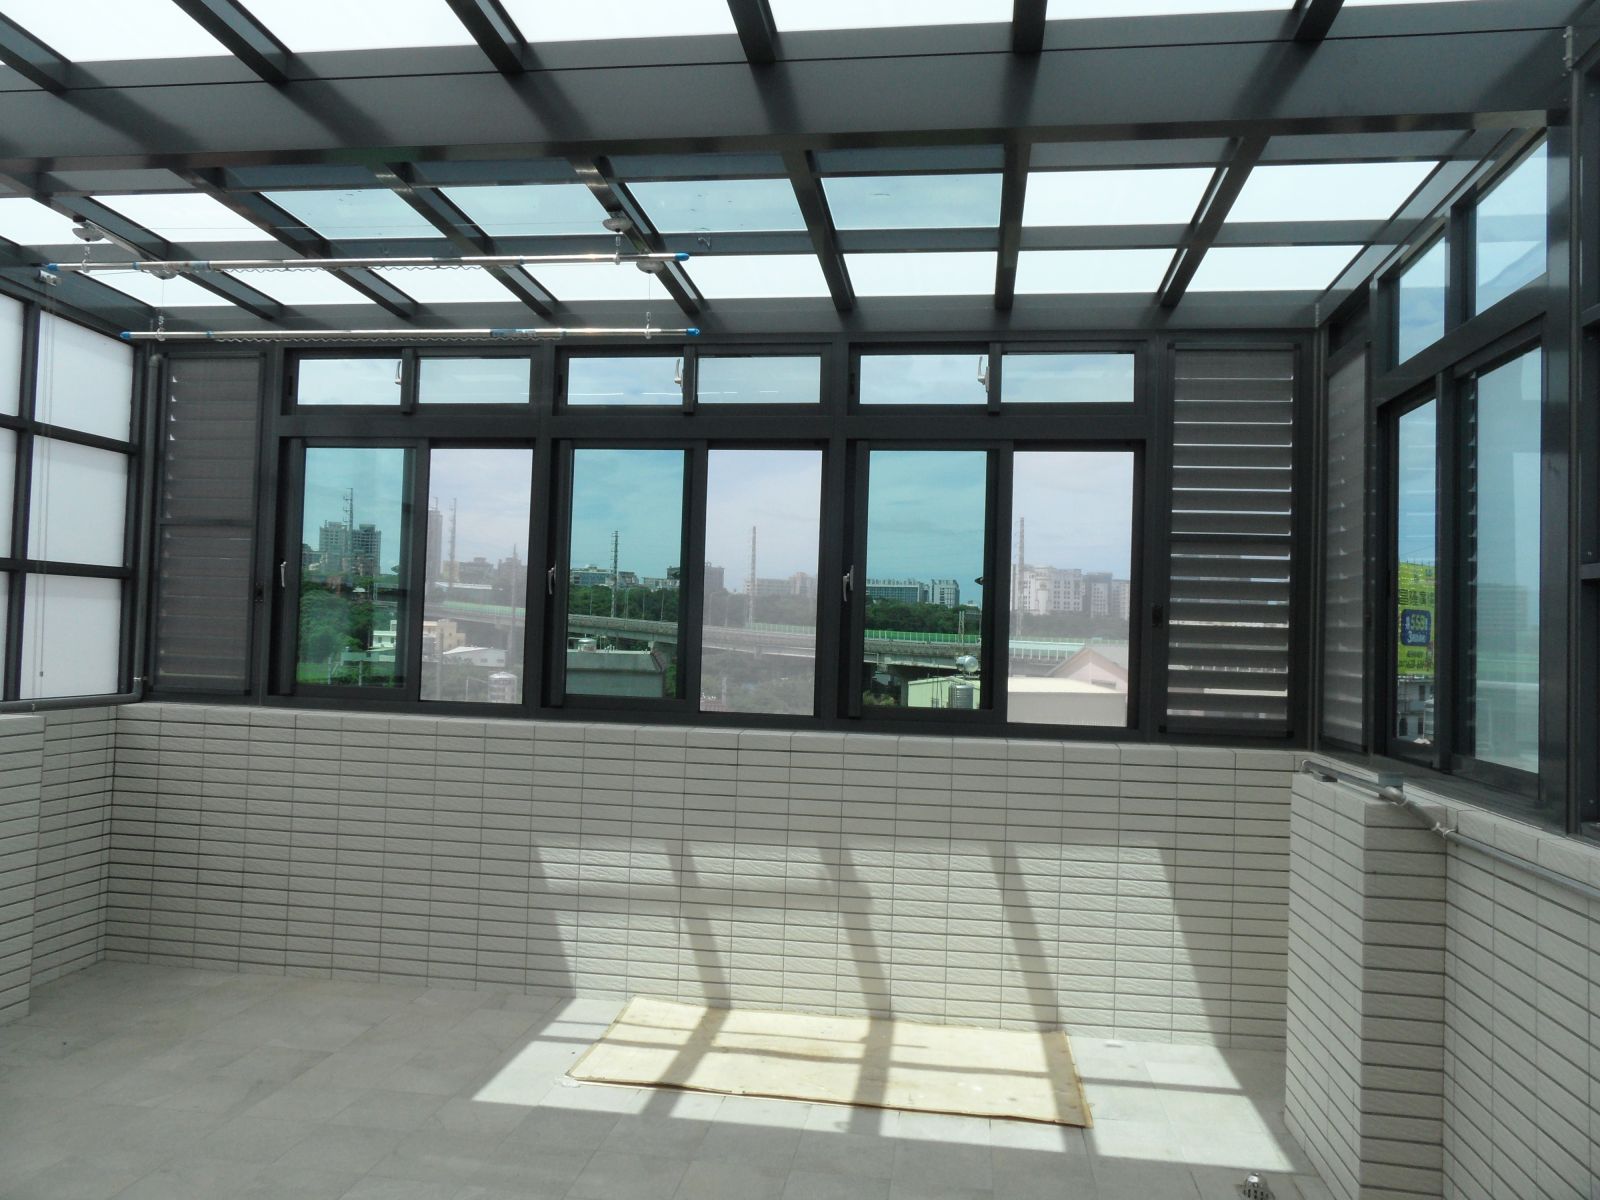 正面採用3組高級氣密窗5mm綠色強化玻璃搭配2組活動百葉窗(含紗窗)